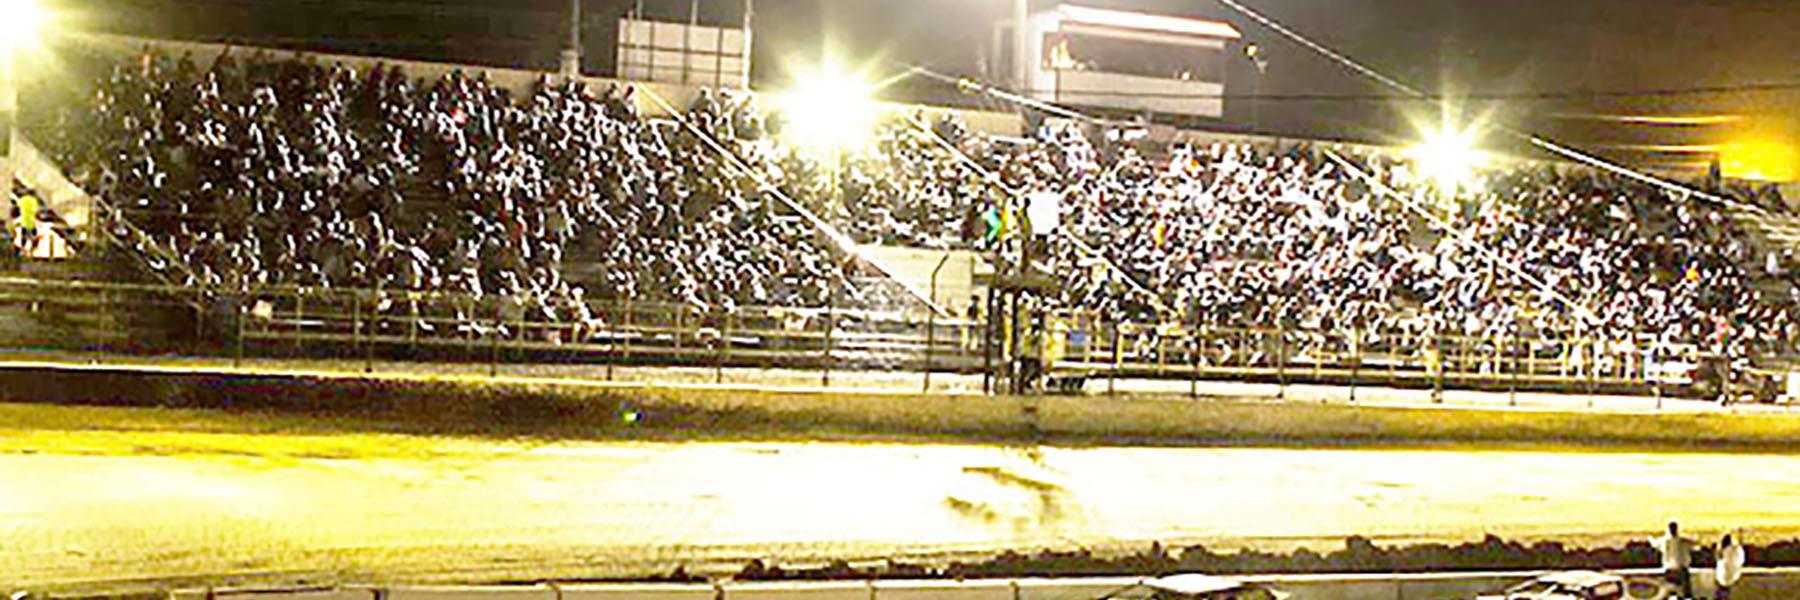 10/22/2022 - Tri-State Speedway